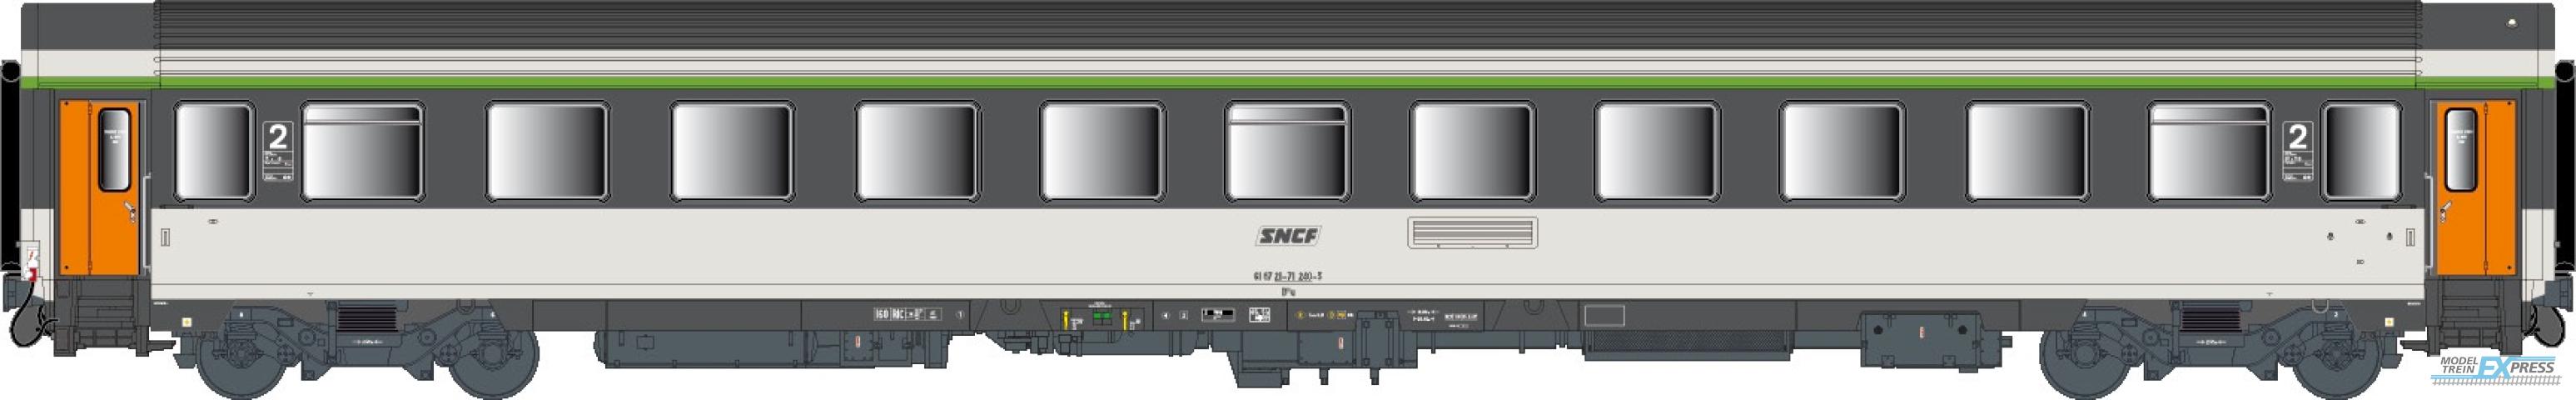 LS Models 41303 Vu, Corail, omkaderd logo  /  Ep. IV-V  /  SNCF  /  HO  /  DC  /  1 P.